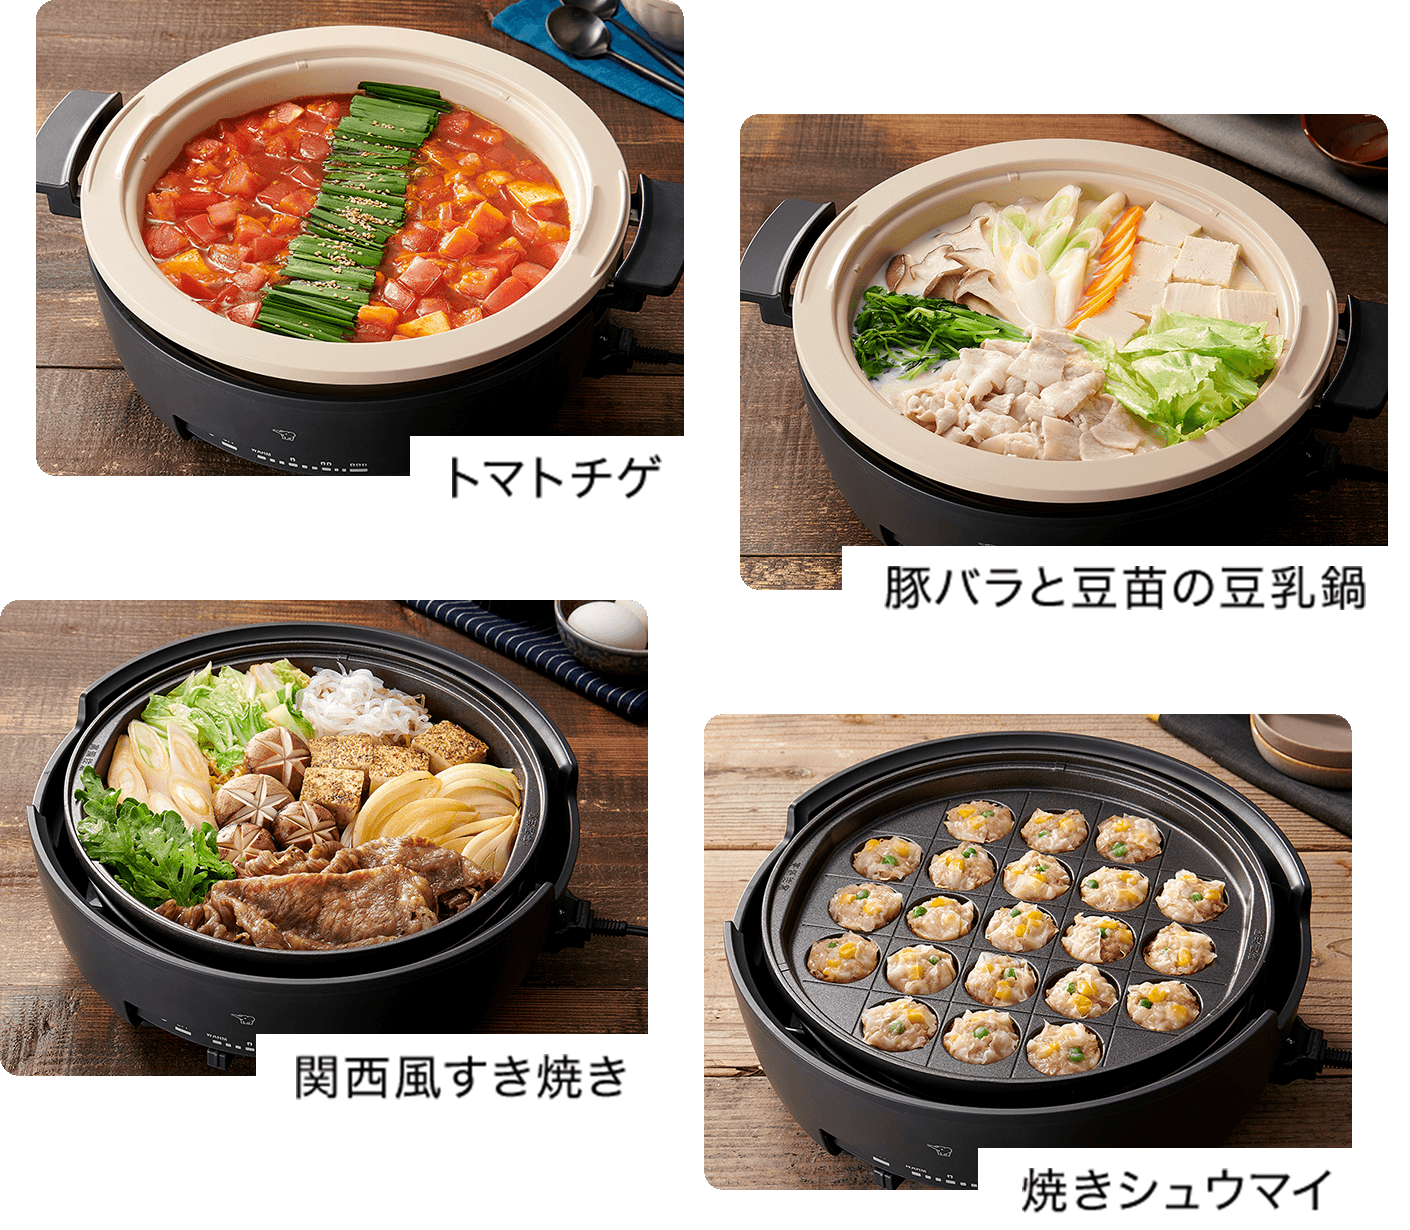 トマトチゲ、豚バラと豆苗の豆乳鍋、関西風すき焼き、焼きシュウマイなど多彩なレシピをご紹介